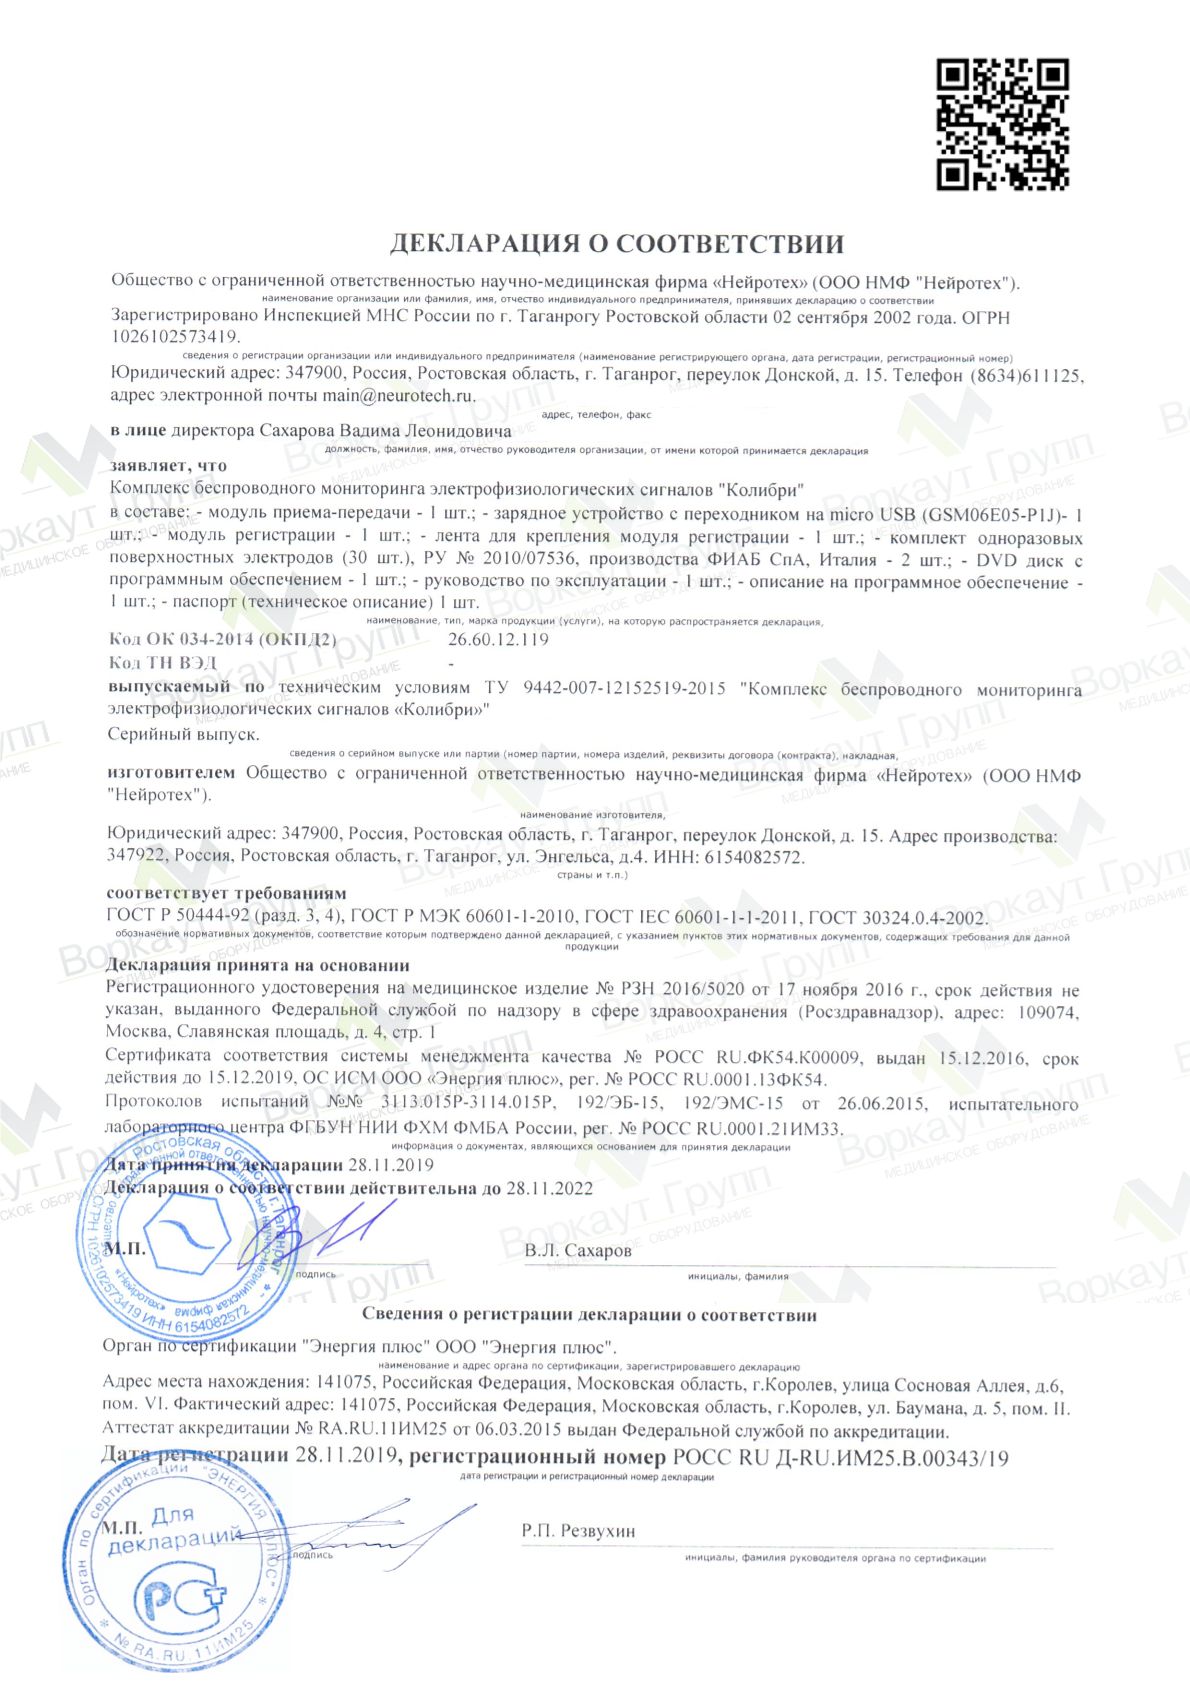 Декларация ГОСТ Системы беспроводного мониторинга БОС "Колибри" (опорно-двигательная)